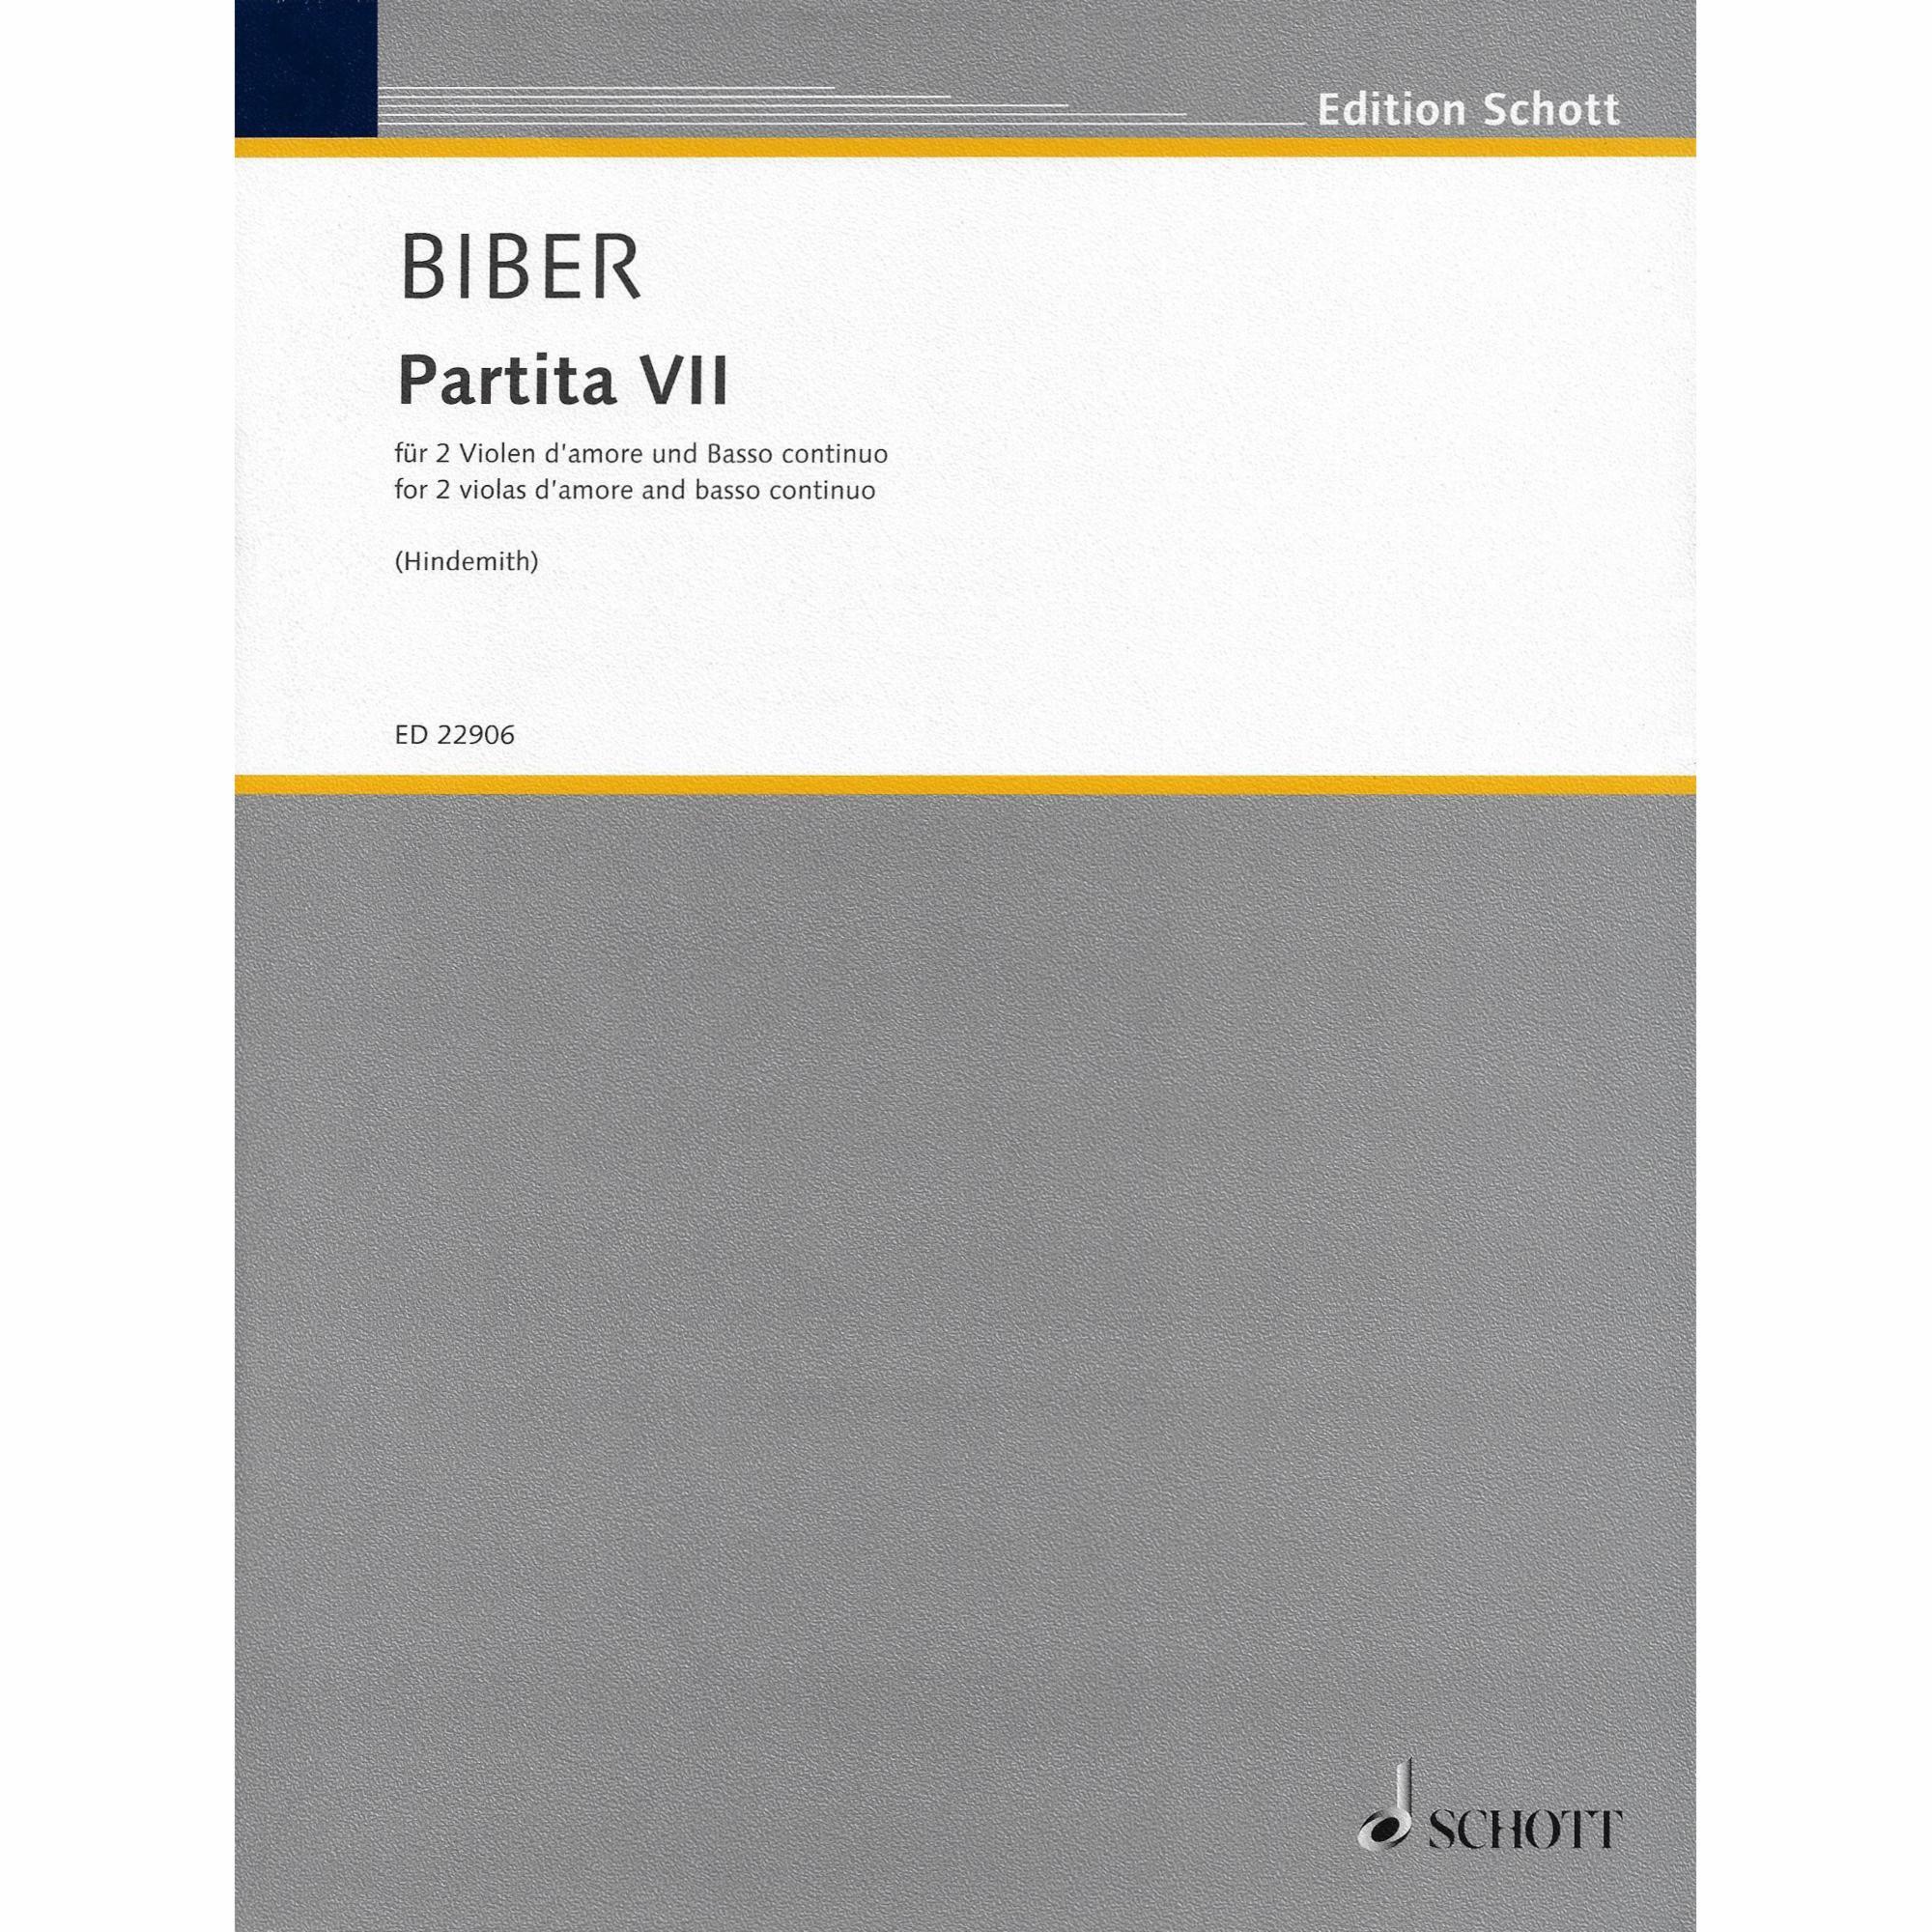 Biber -- Partita VII for Two Violas and Piano